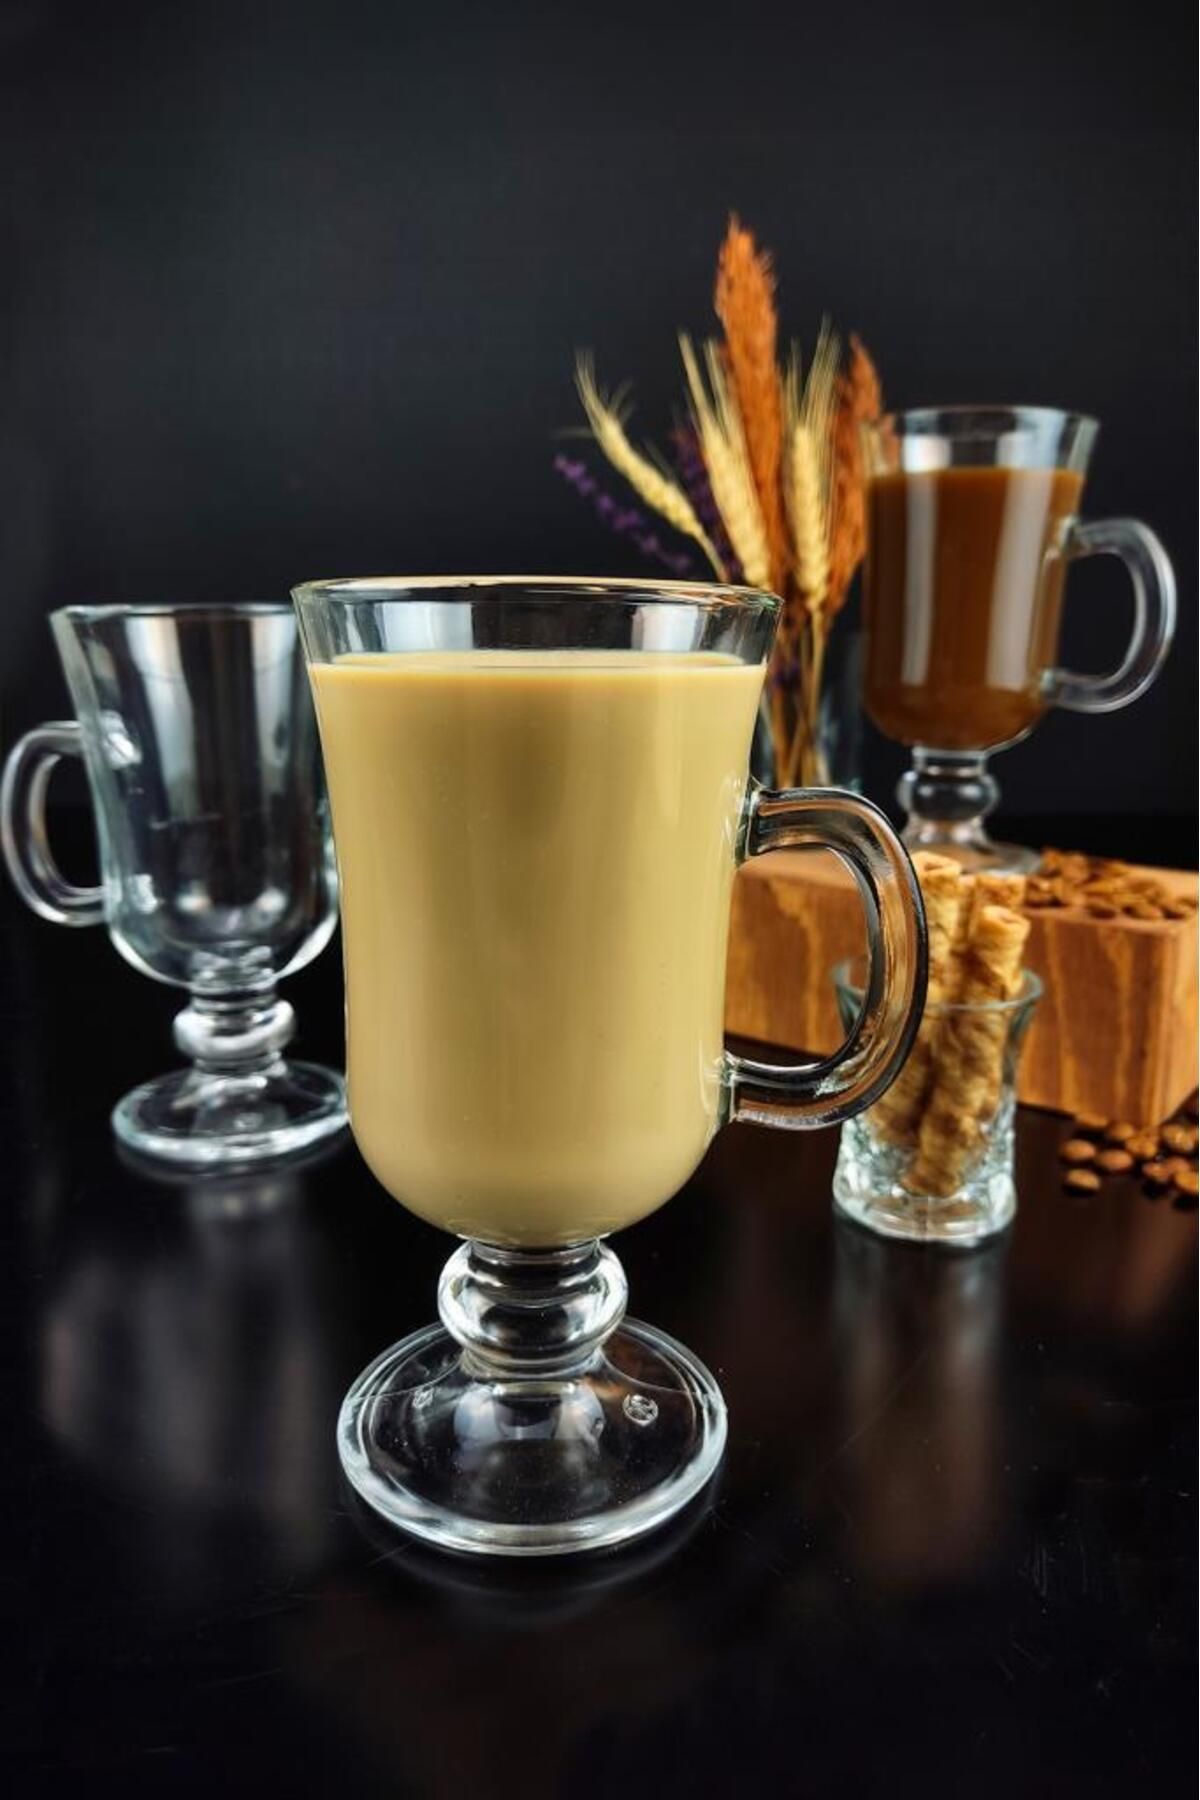 Digithome Royal Mug 3'lü Kulplu Cam Latte Ve Kahve Bardağı C1-1-276